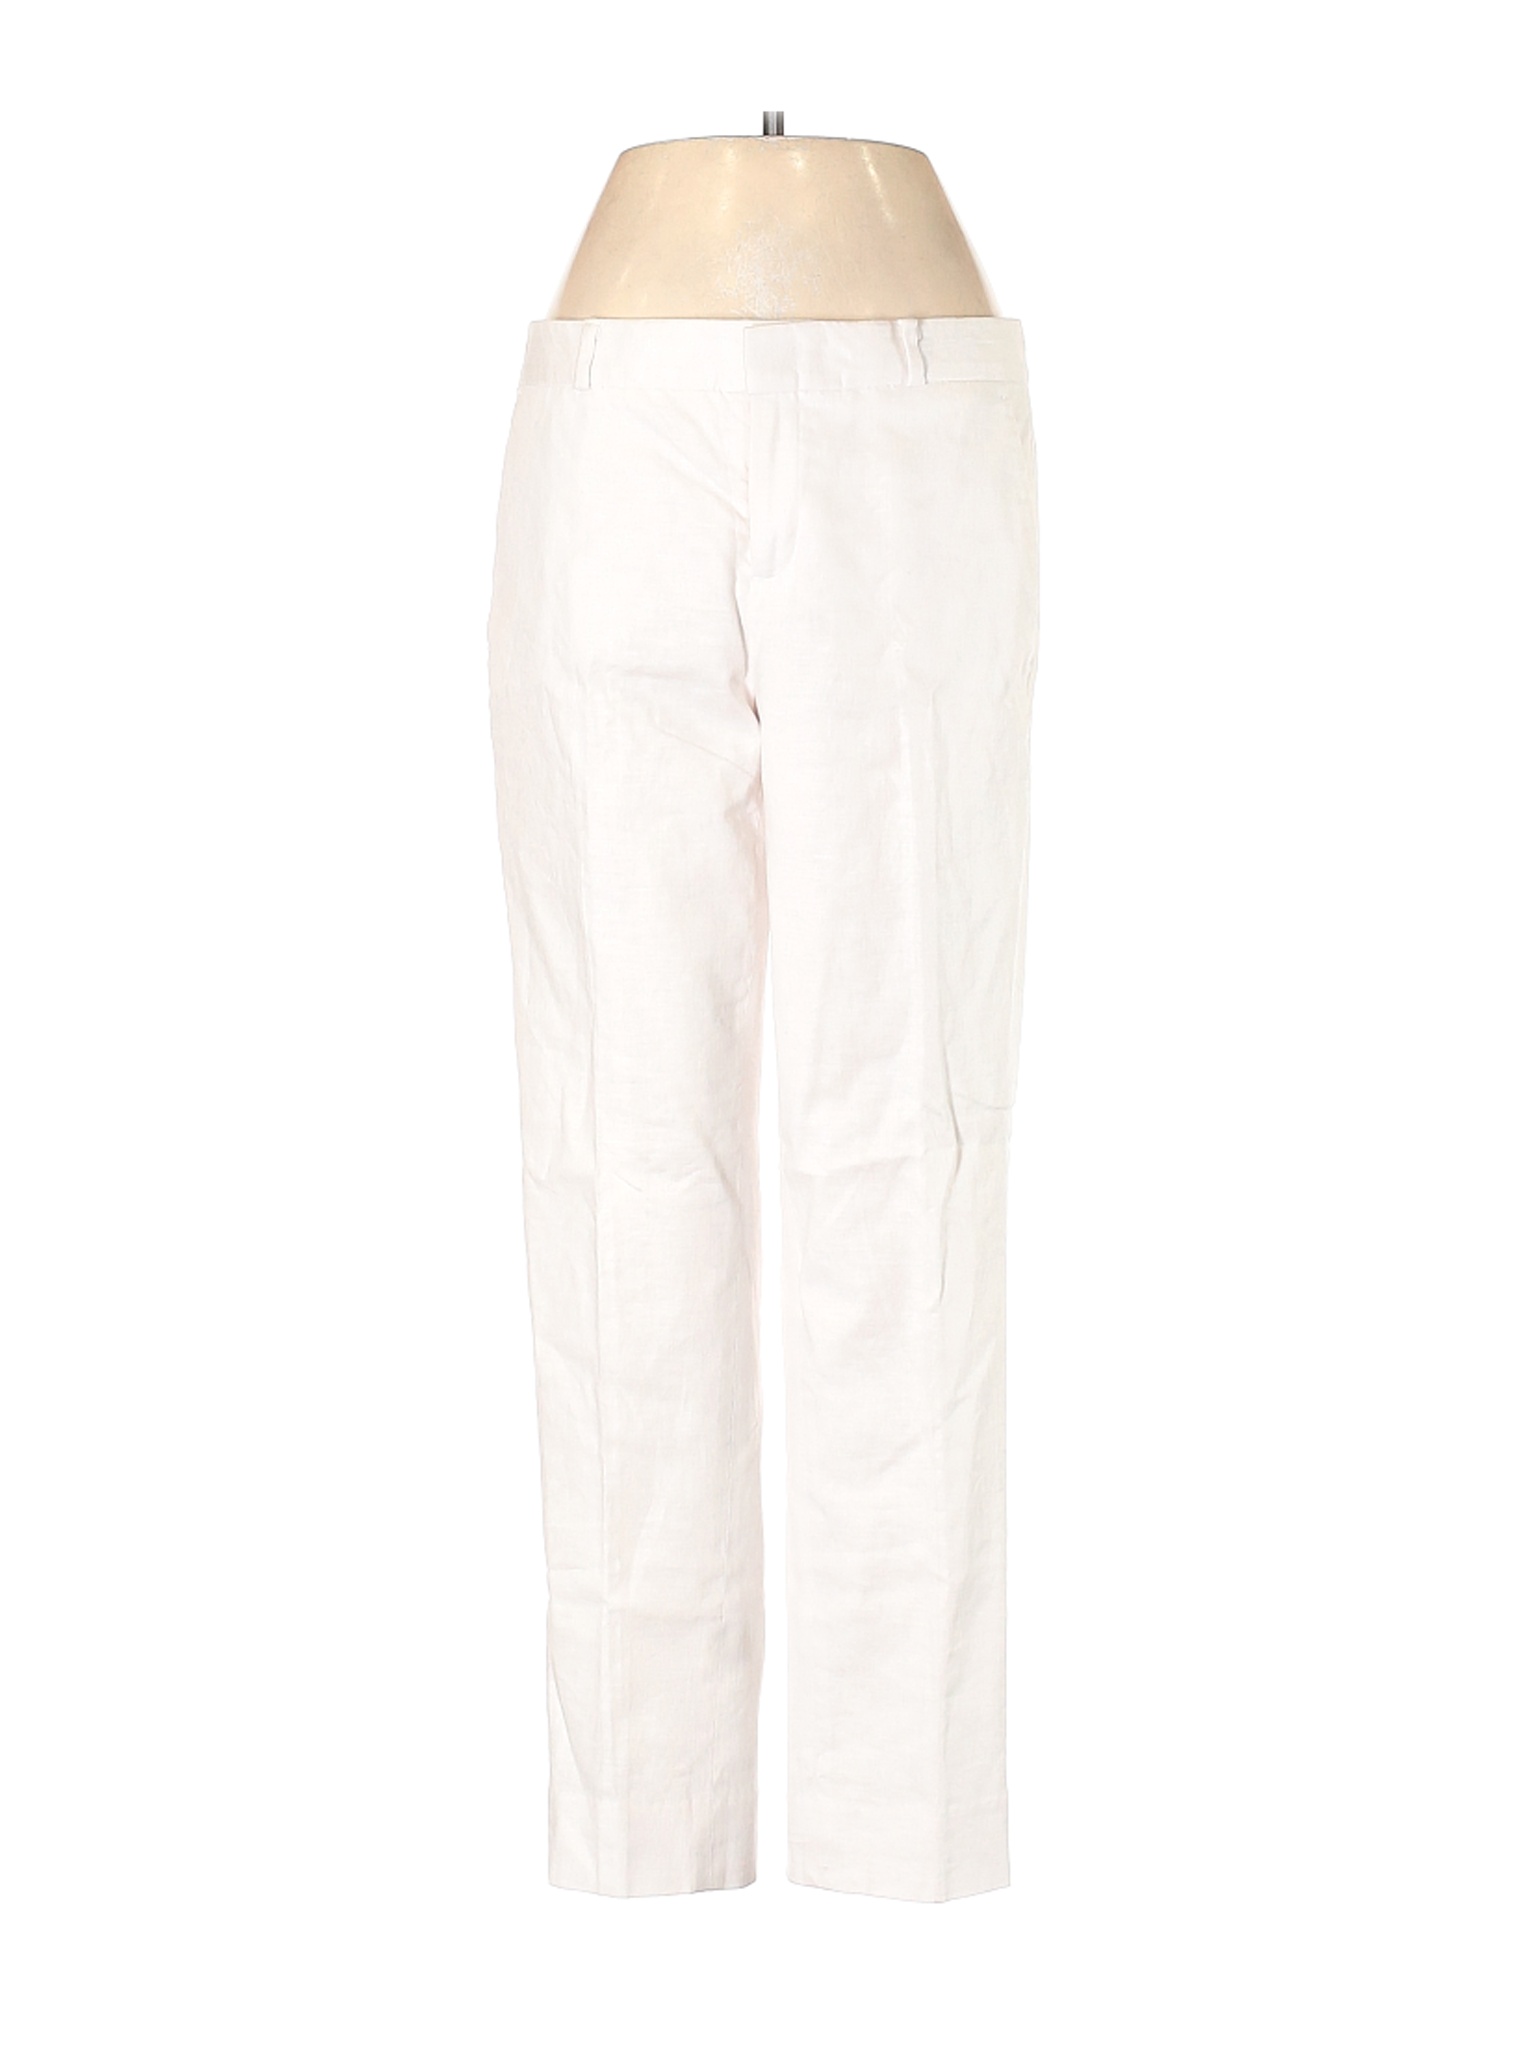 NWT Banana Republic Women White Linen Pants 2 | eBay